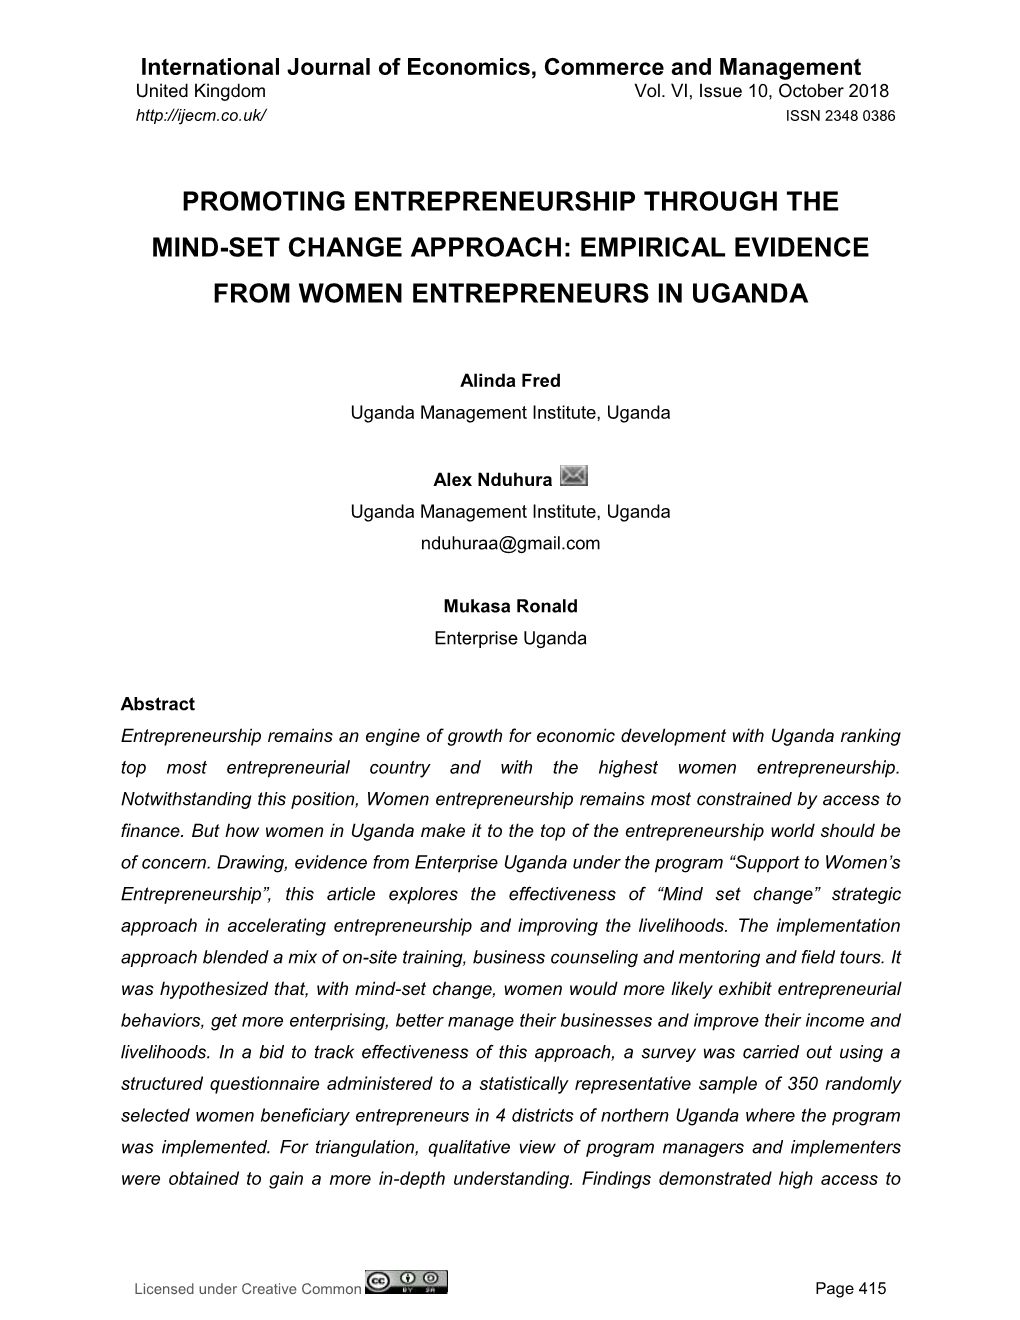 Empirical Evidence from Women Entrepreneurs in Uganda